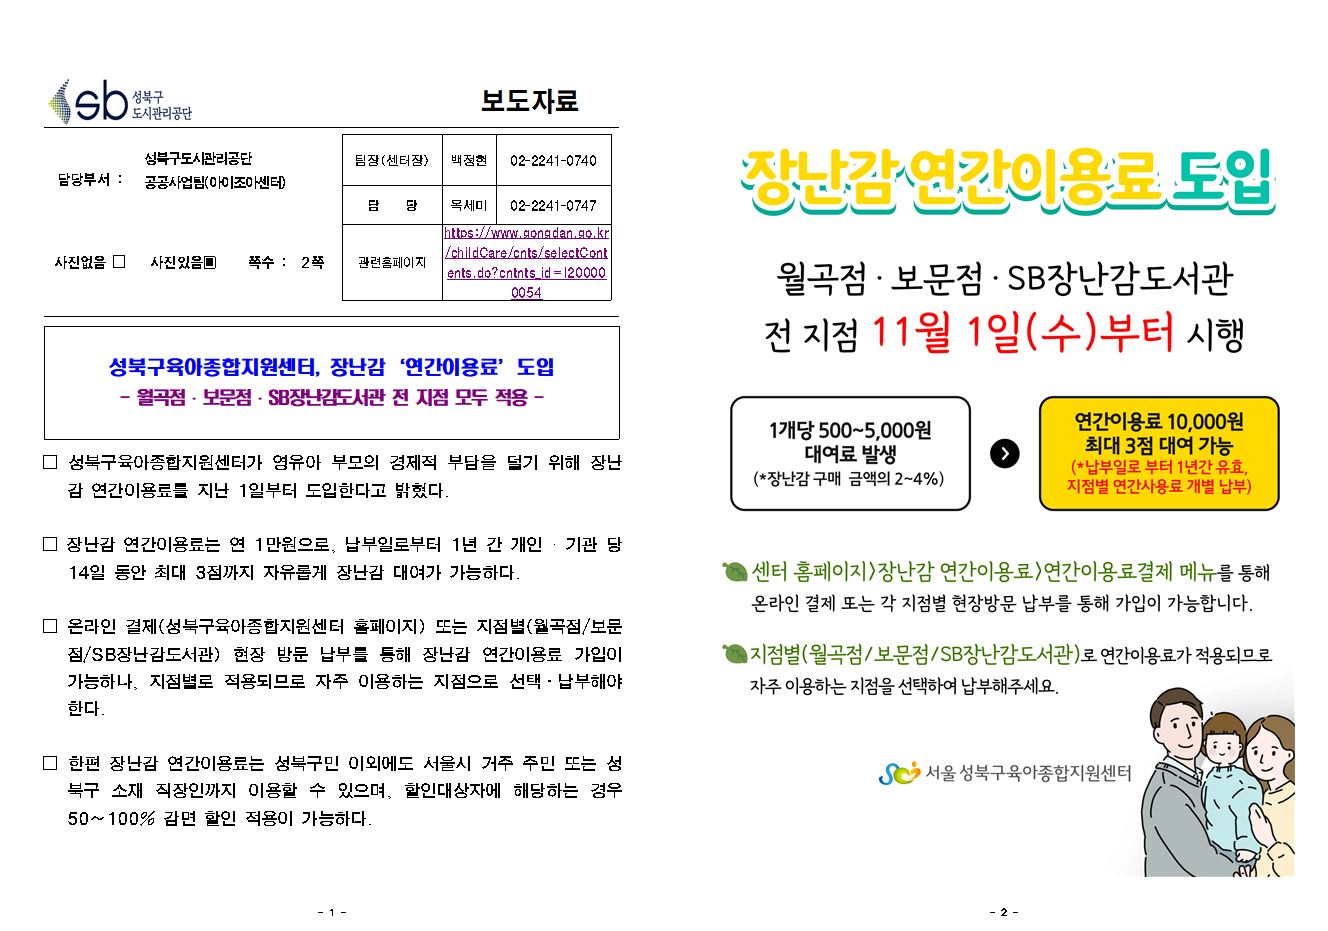 성북구육아종합지원센터, 장난감 '연간이용료'도입 보도자료